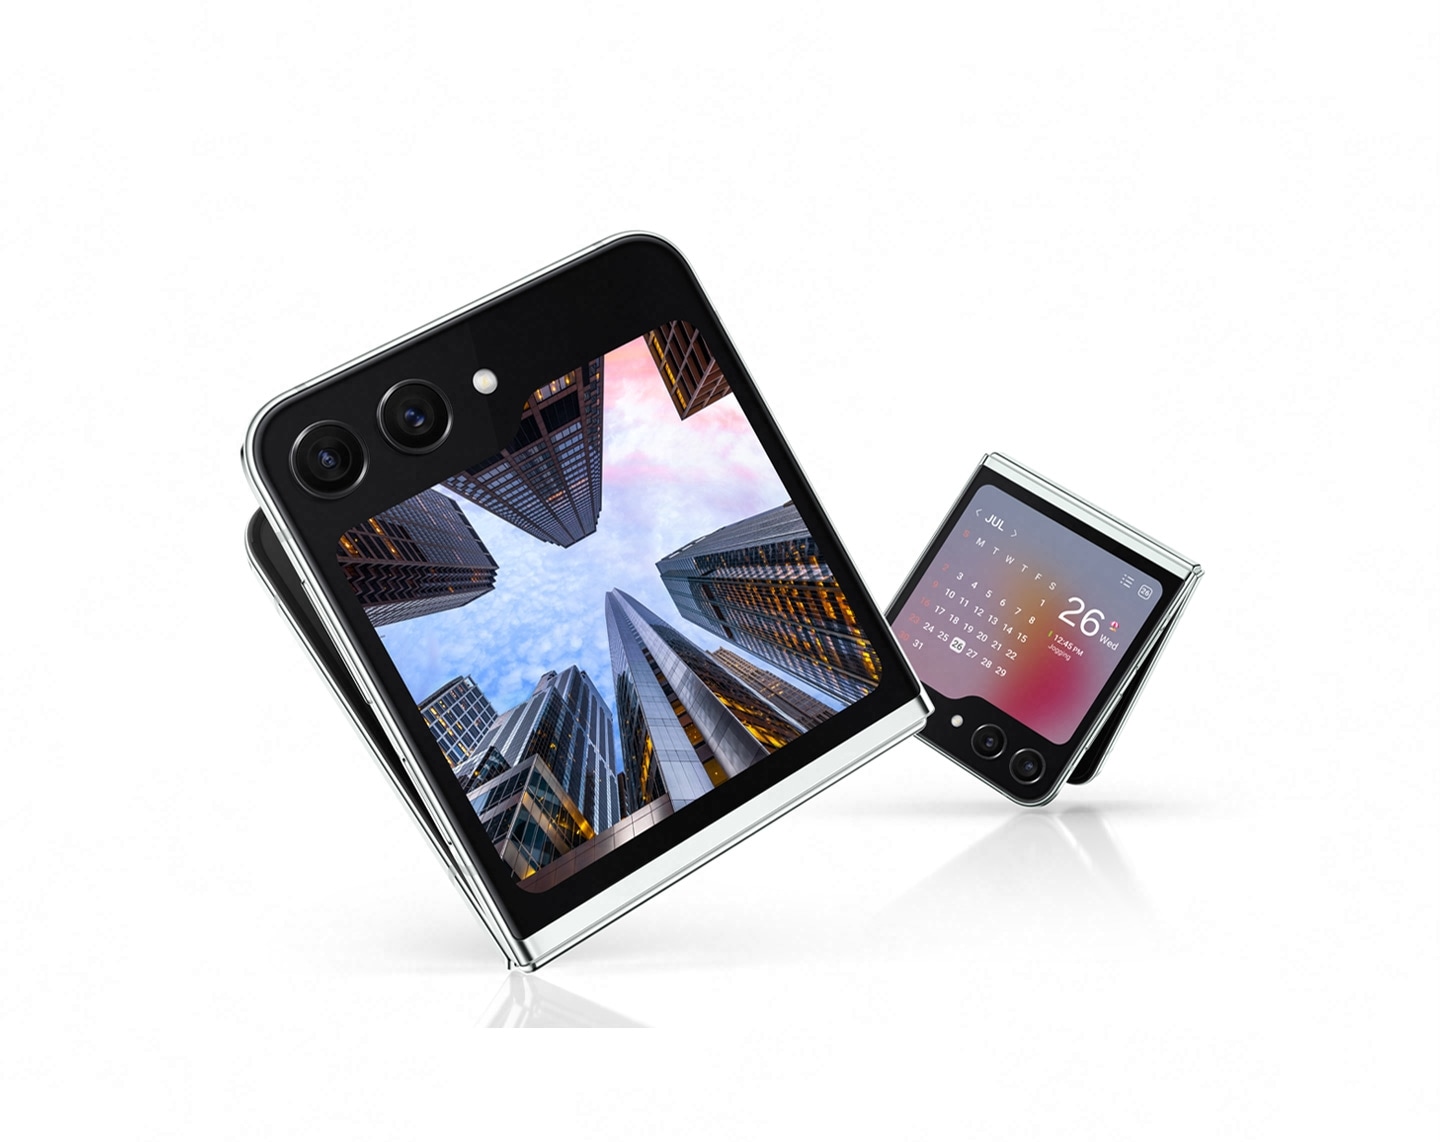 Dva uređaja Galaxy Z Flip5 lagano su rasklopljena i vide se iz Flex prozora. Jedna prikazuje šarenu i detaljnu urbanu fotografiju. Drugi prikazuje widget kalendara s mjesečnim pregledom i događajima zakazanim za danas.